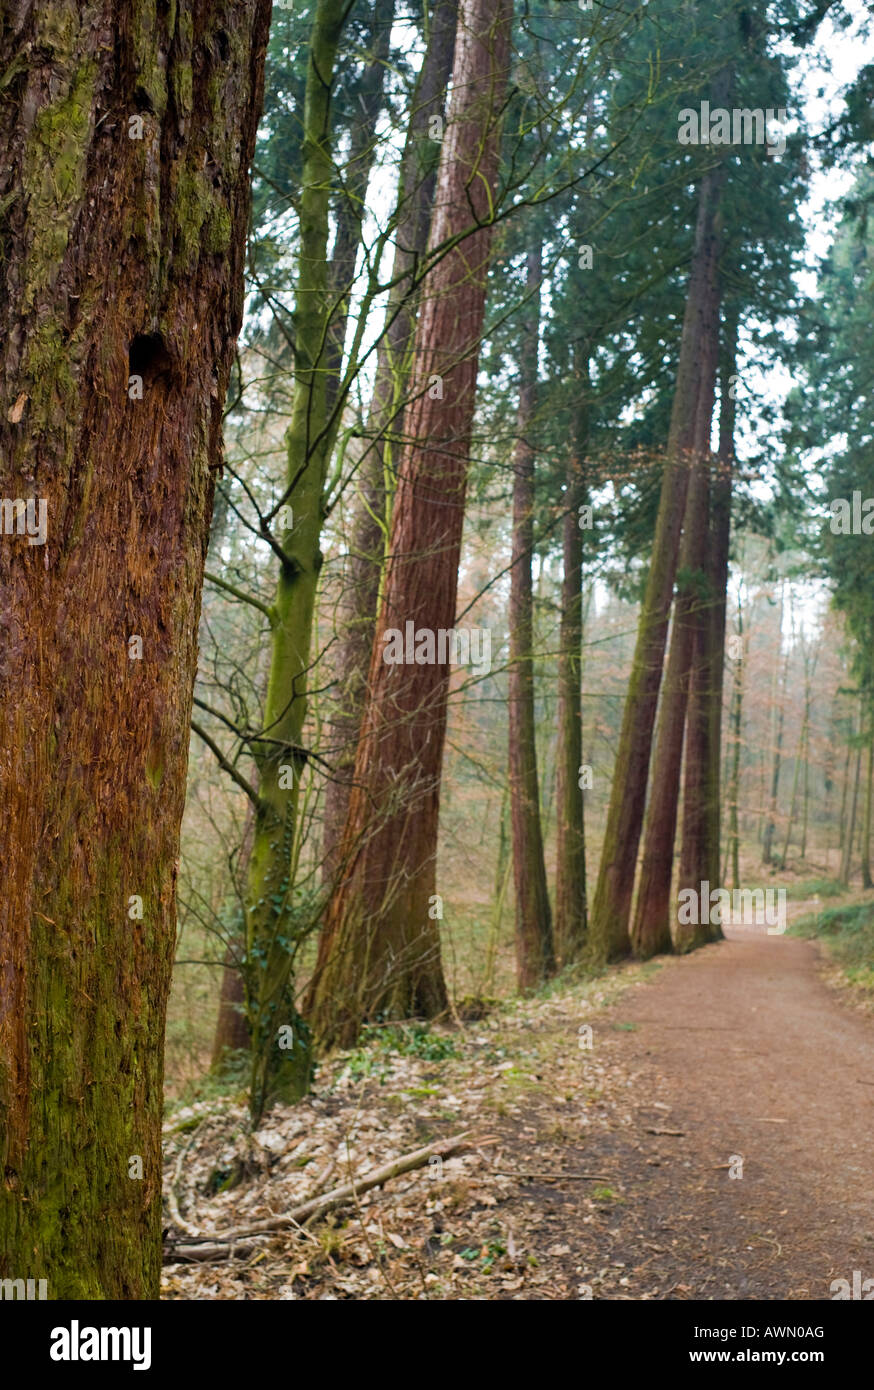 130 Jahre alten Mammutbäume (Sequoioideae), mit 55 Metern die höchsten Bäume in Europa, Exotenwald Park, Weinheim, Baden-W Stockfoto